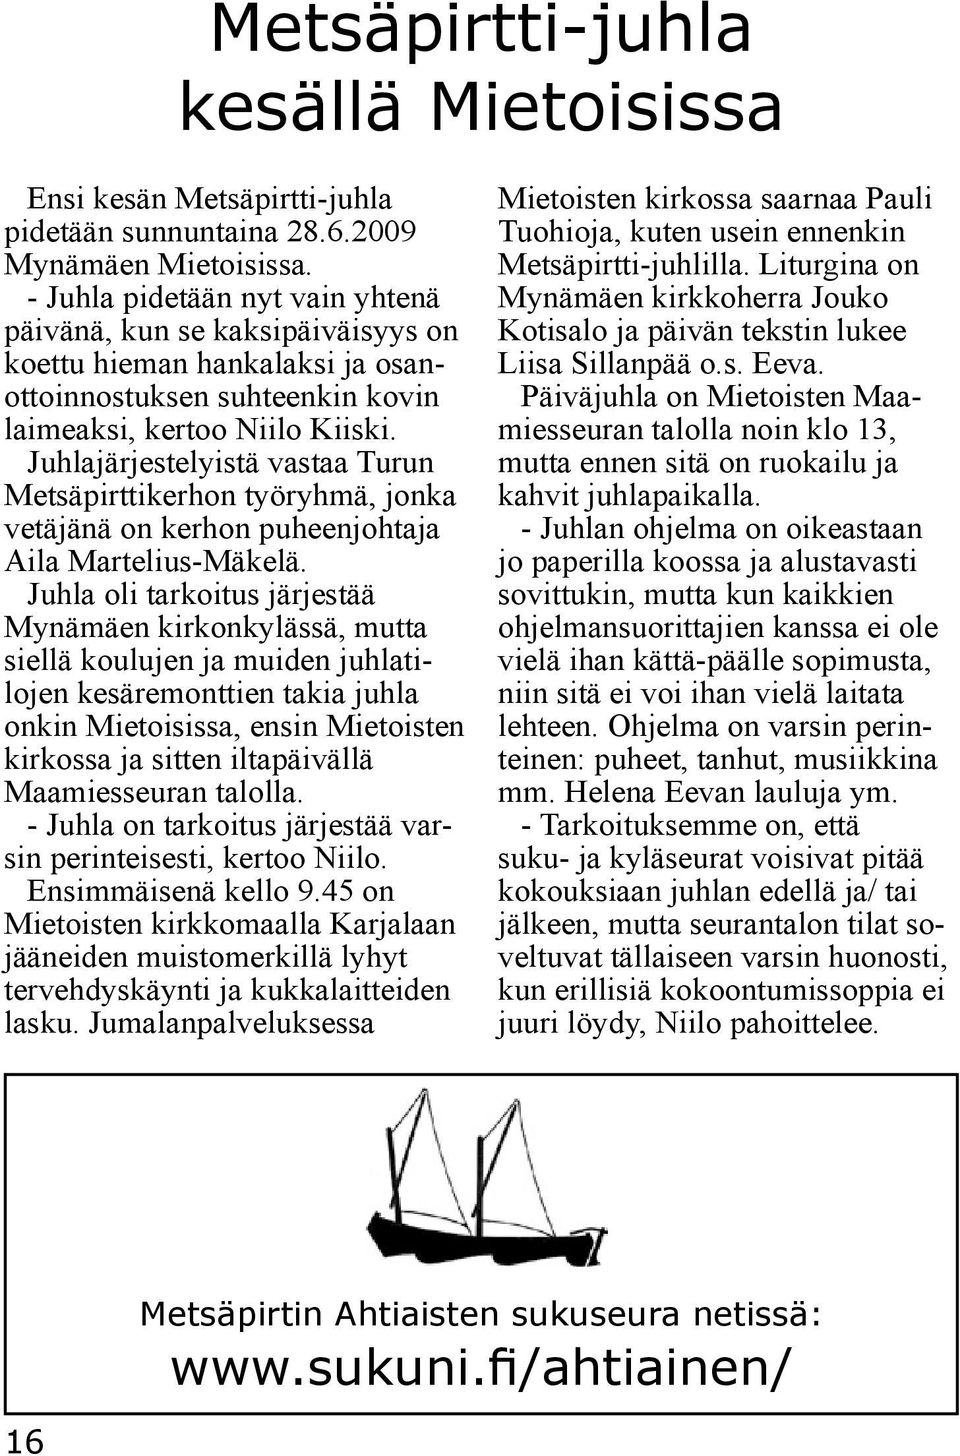 Juhlajärjestelyistä vastaa Turun Metsäpirttikerhon työryhmä, jonka vetäjänä on kerhon puheenjohtaja Aila Martelius-Mäkelä.